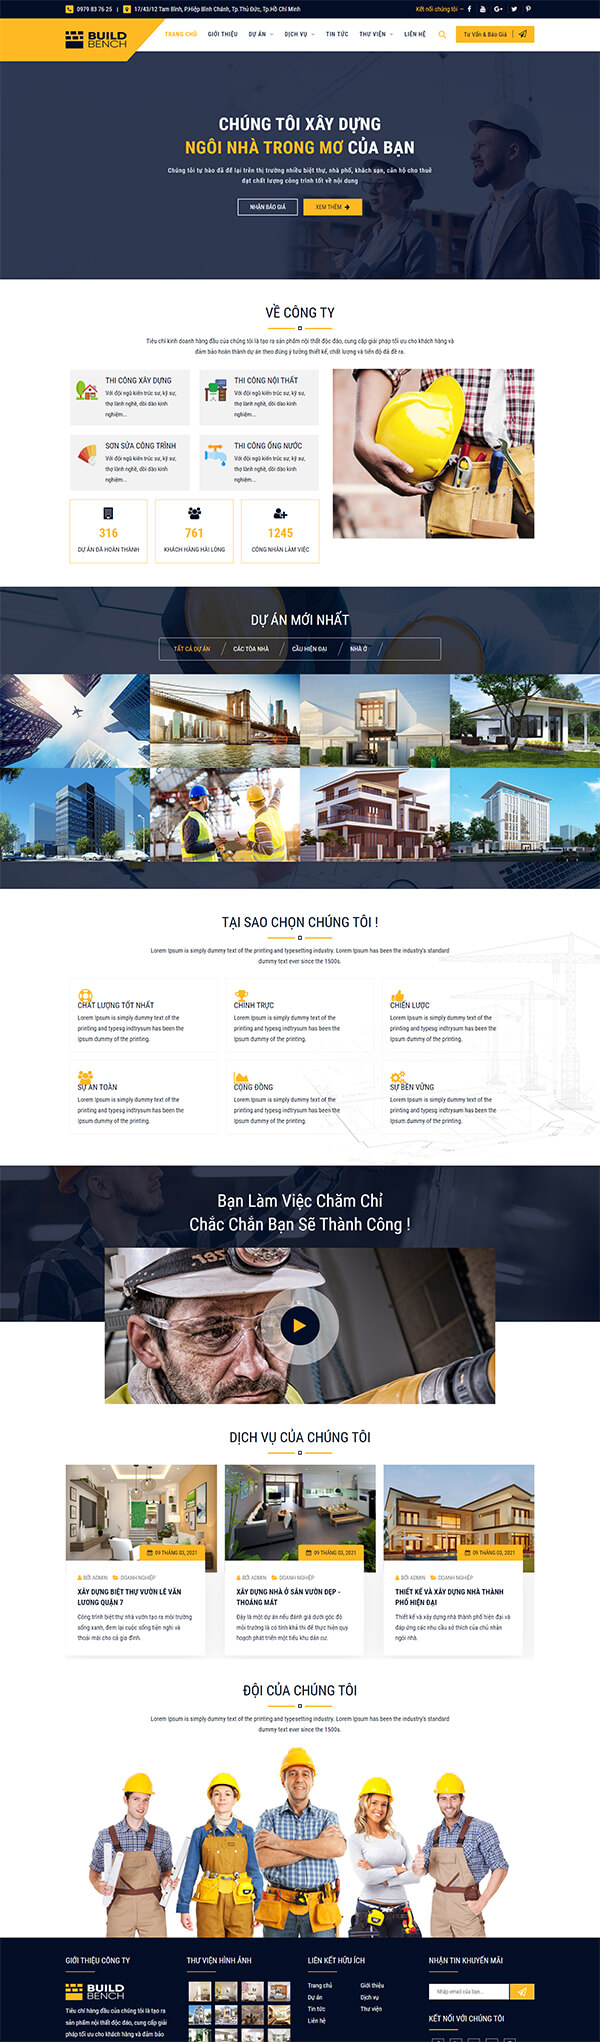 Dịch vụ xây dựng | Công ty thiết kế website Long Thịnh